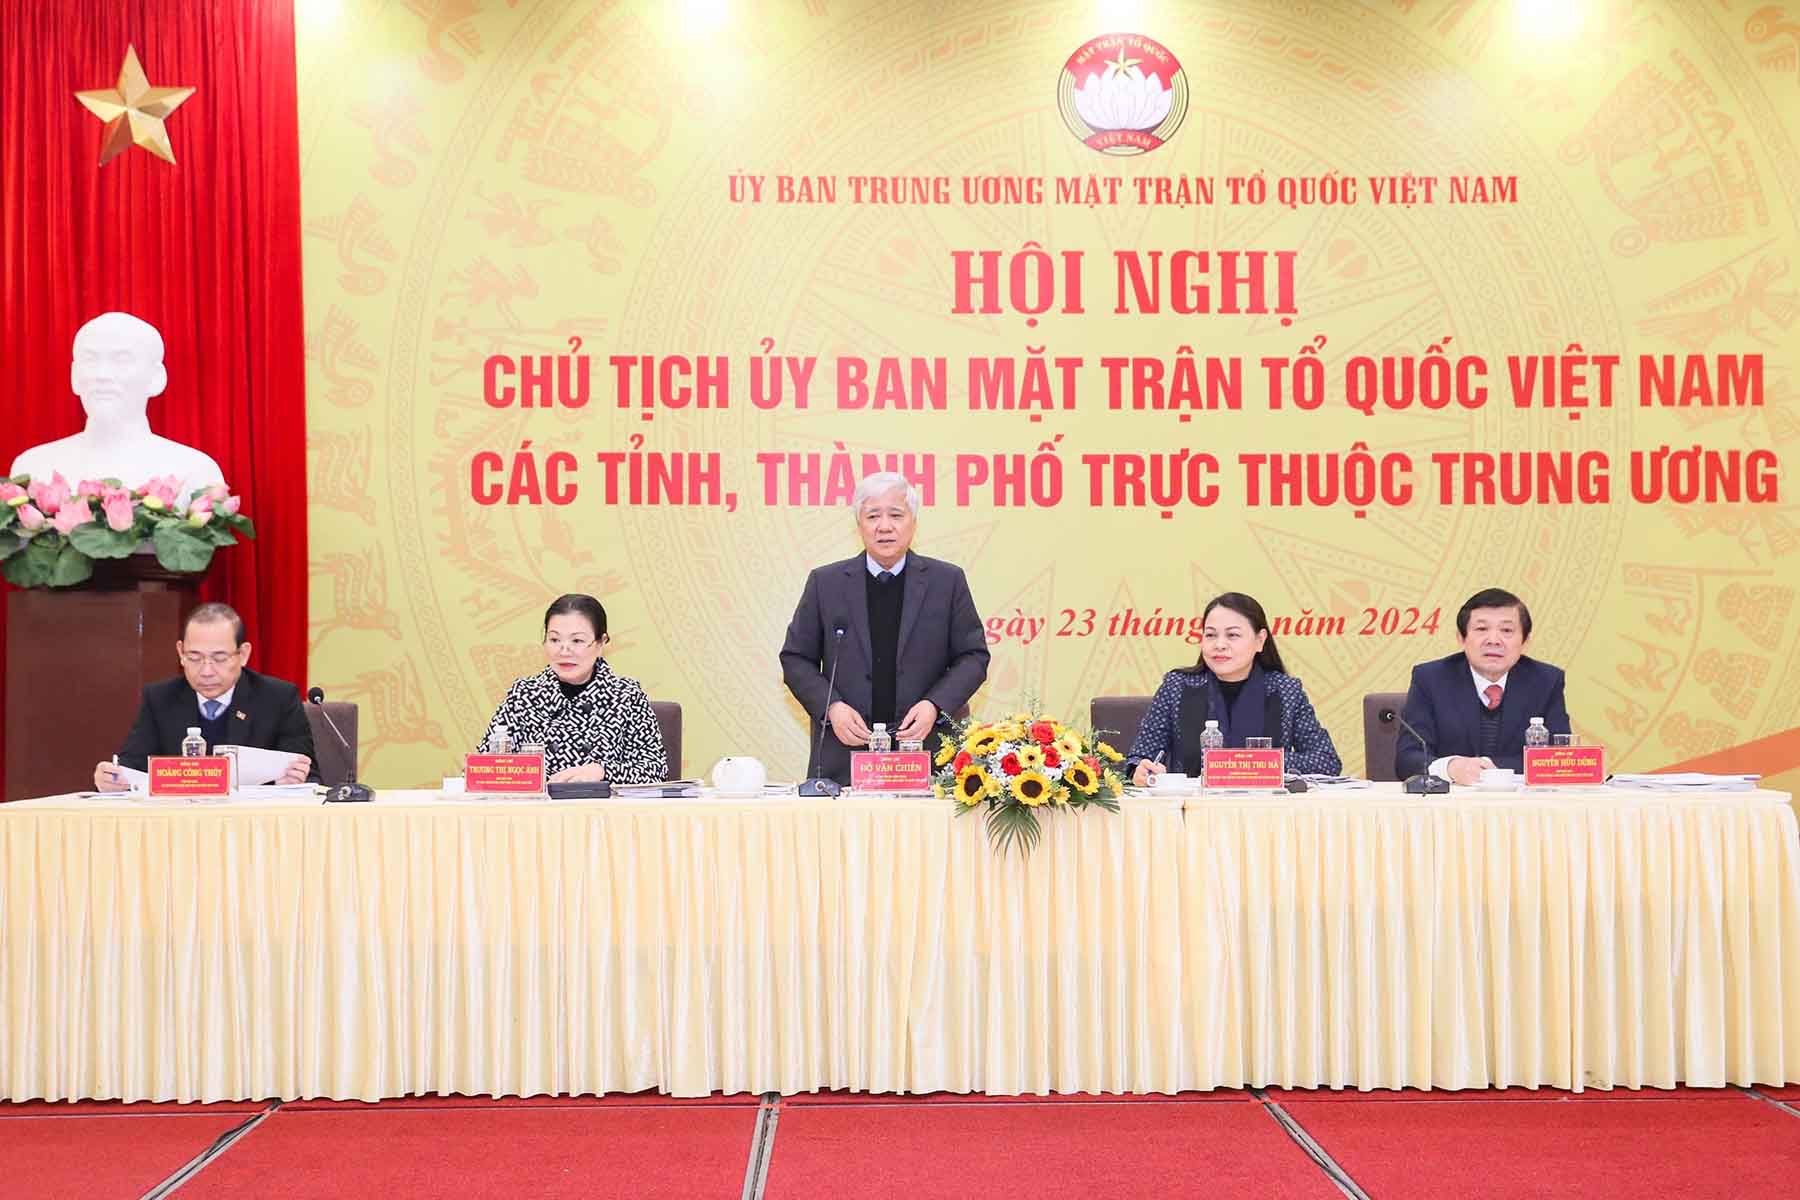 Chủ tịch Ủy ban Trung ương MTTQ Việt Nam Đỗ Văn Chiến phát biểu tại hội nghị.  